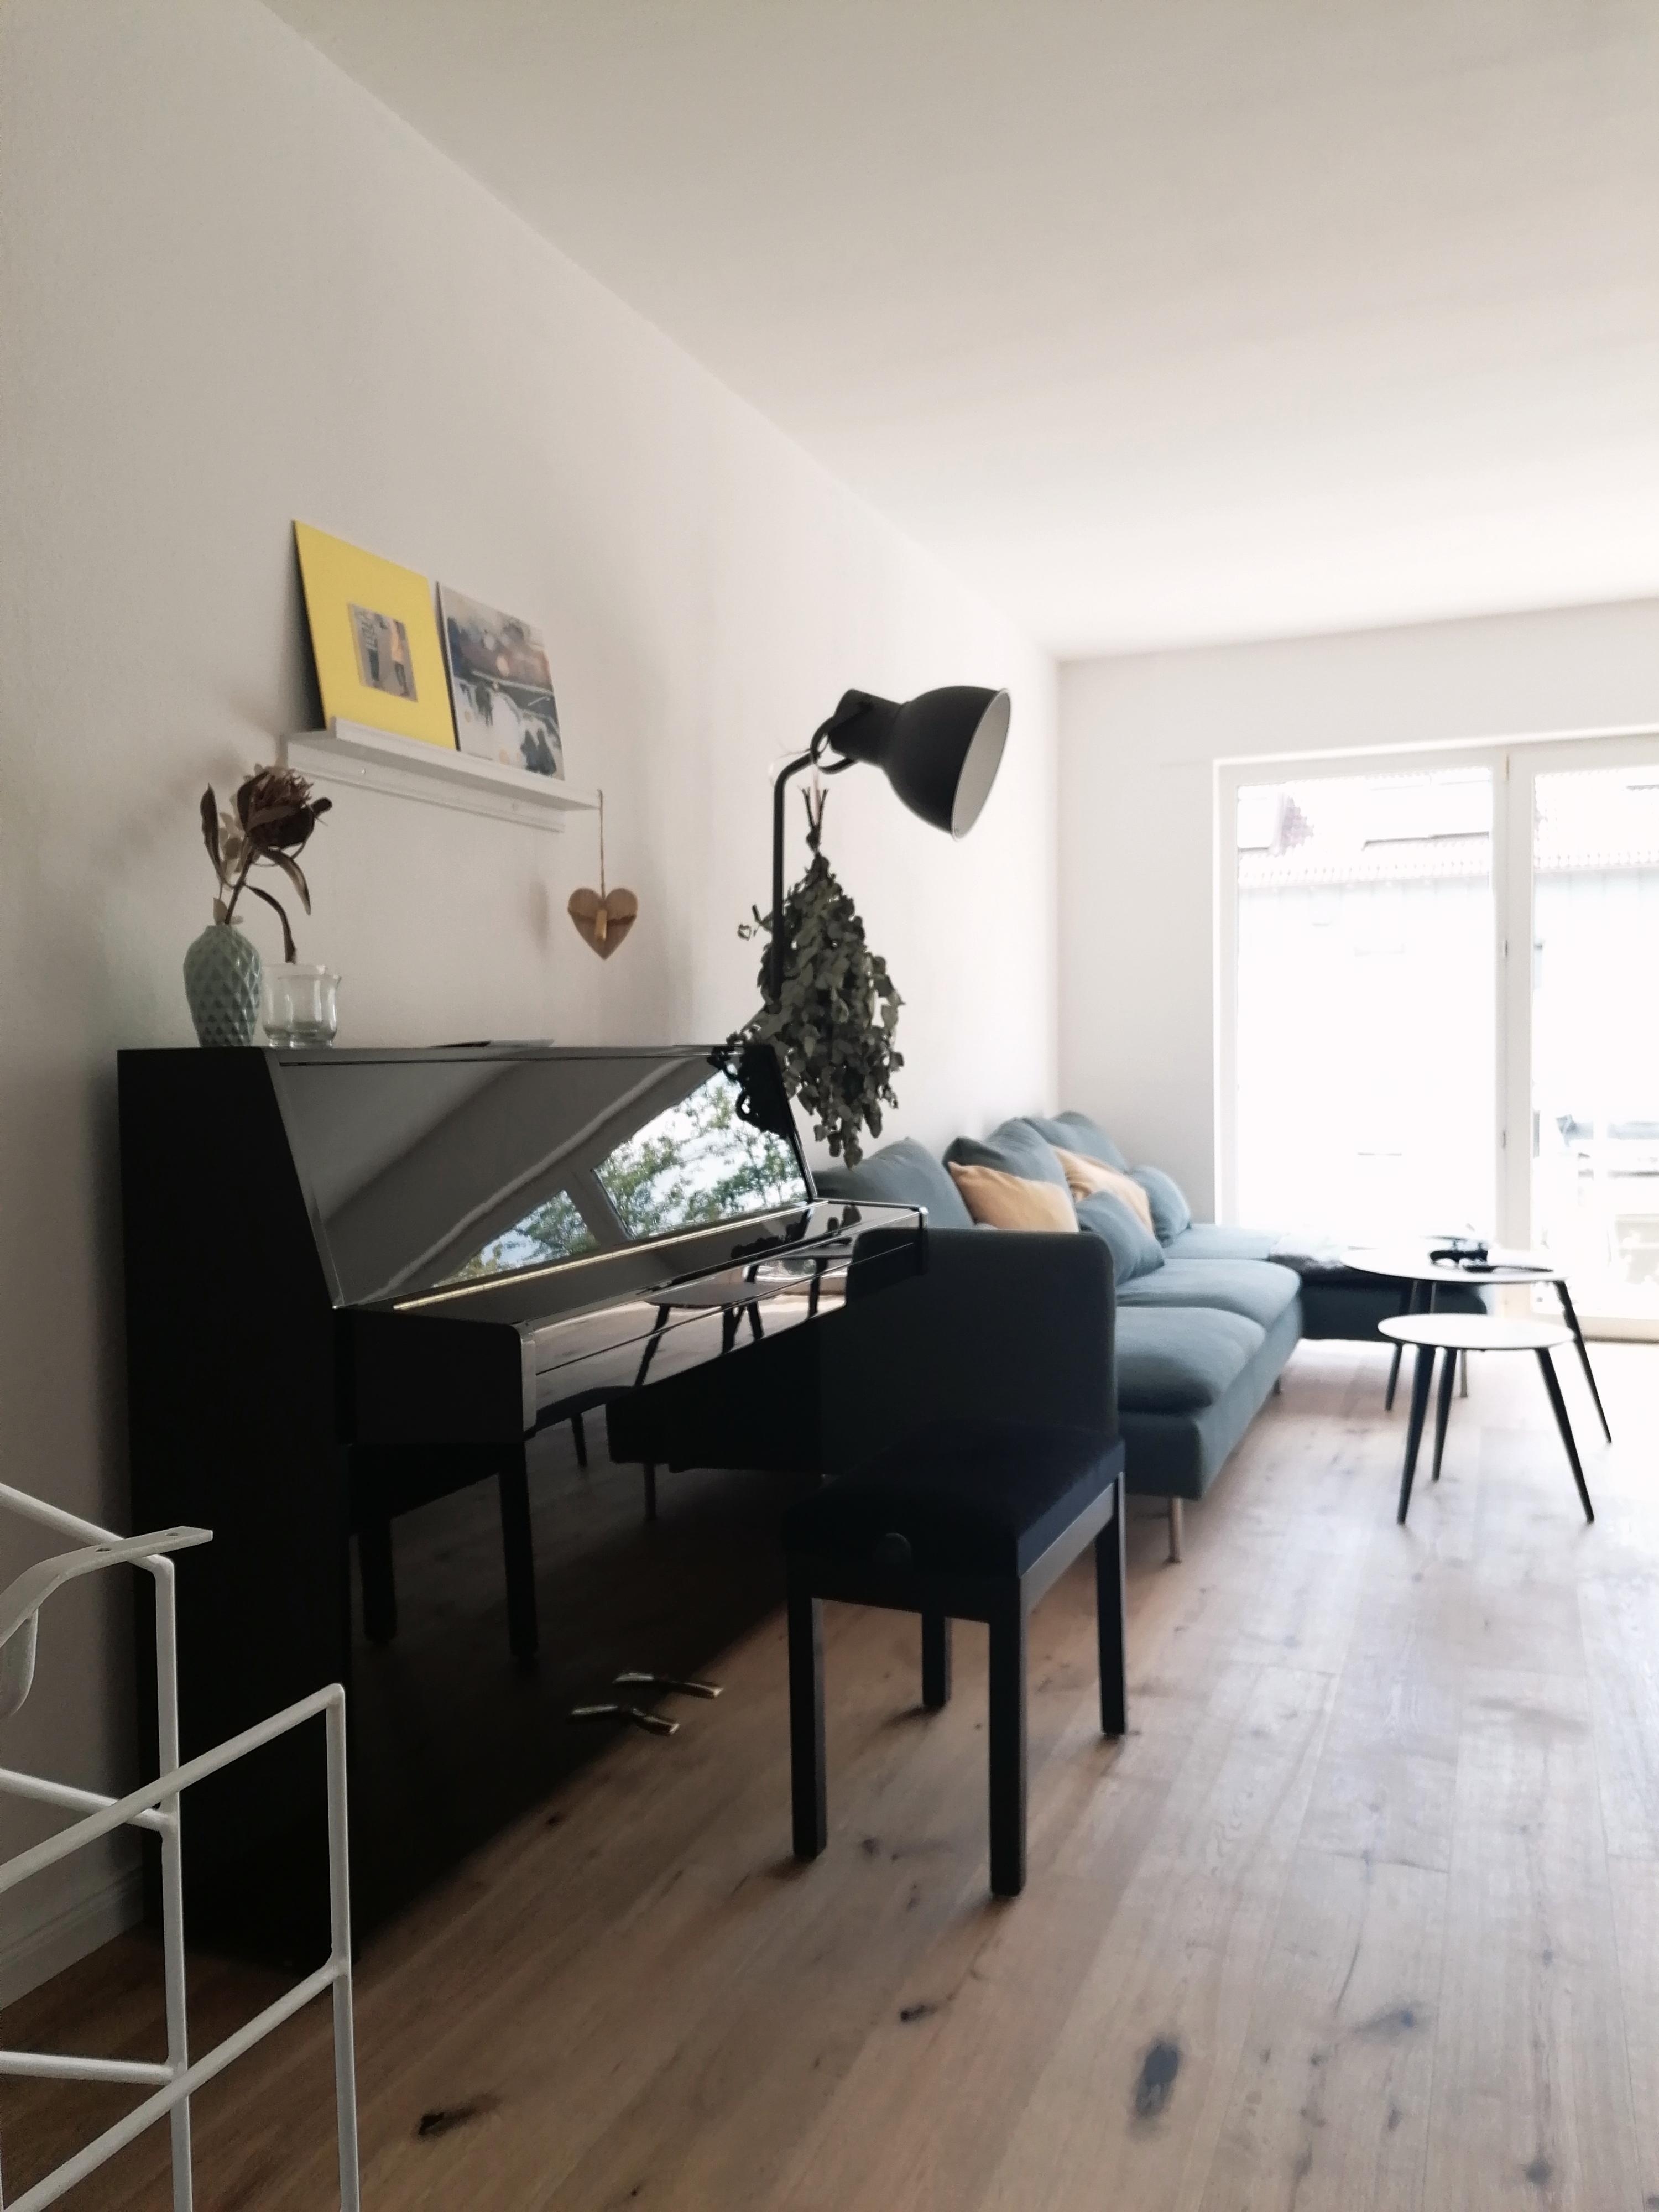 Das neue Highlight in unserem Eigenheim #Klavier #Wohnzimmer #Musikermann